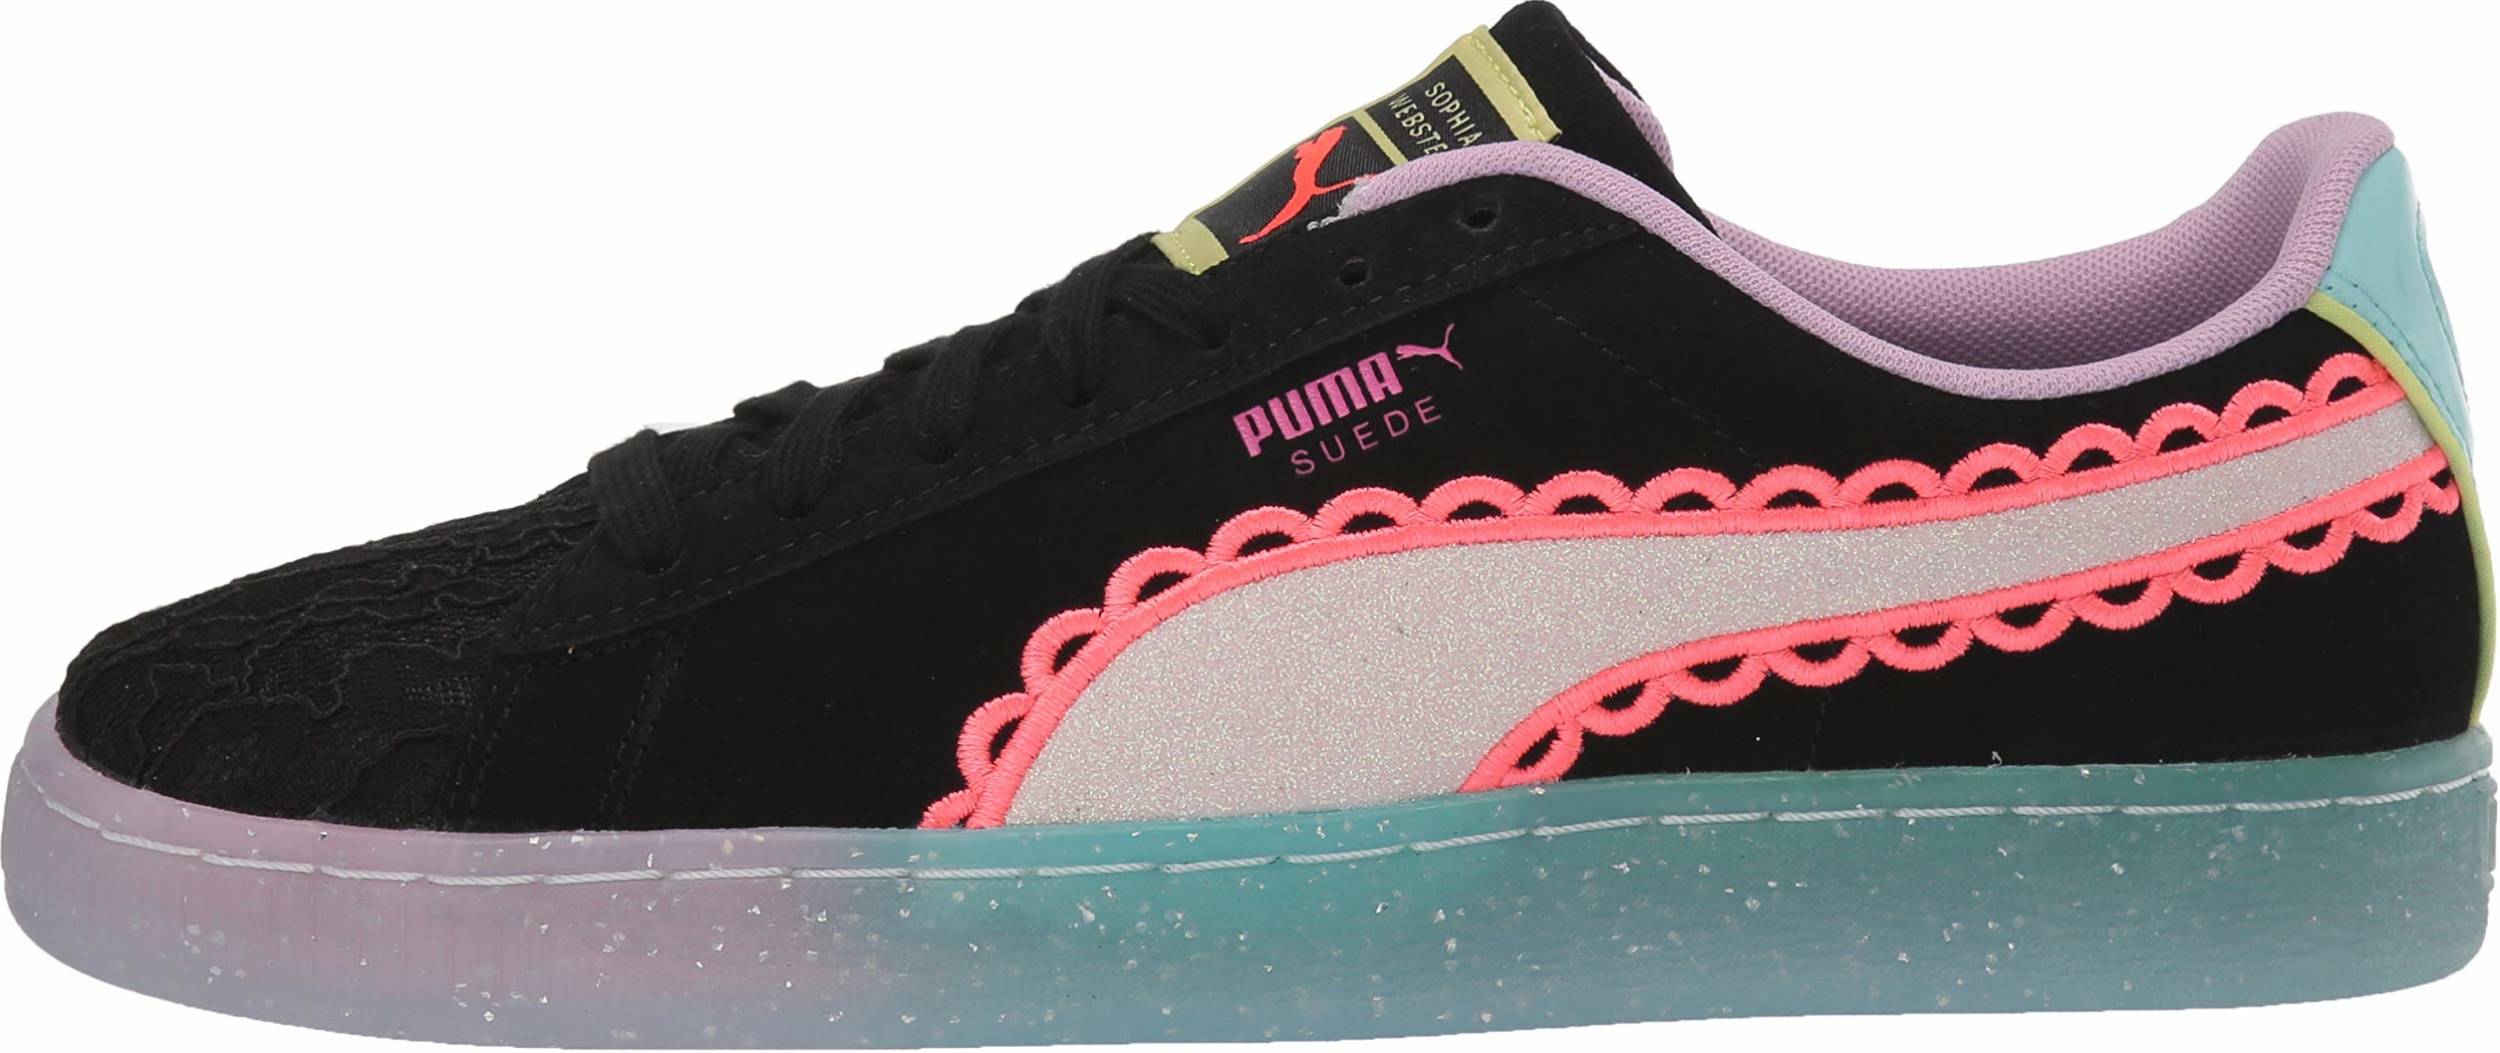 puma x sophia webster suede sneakers